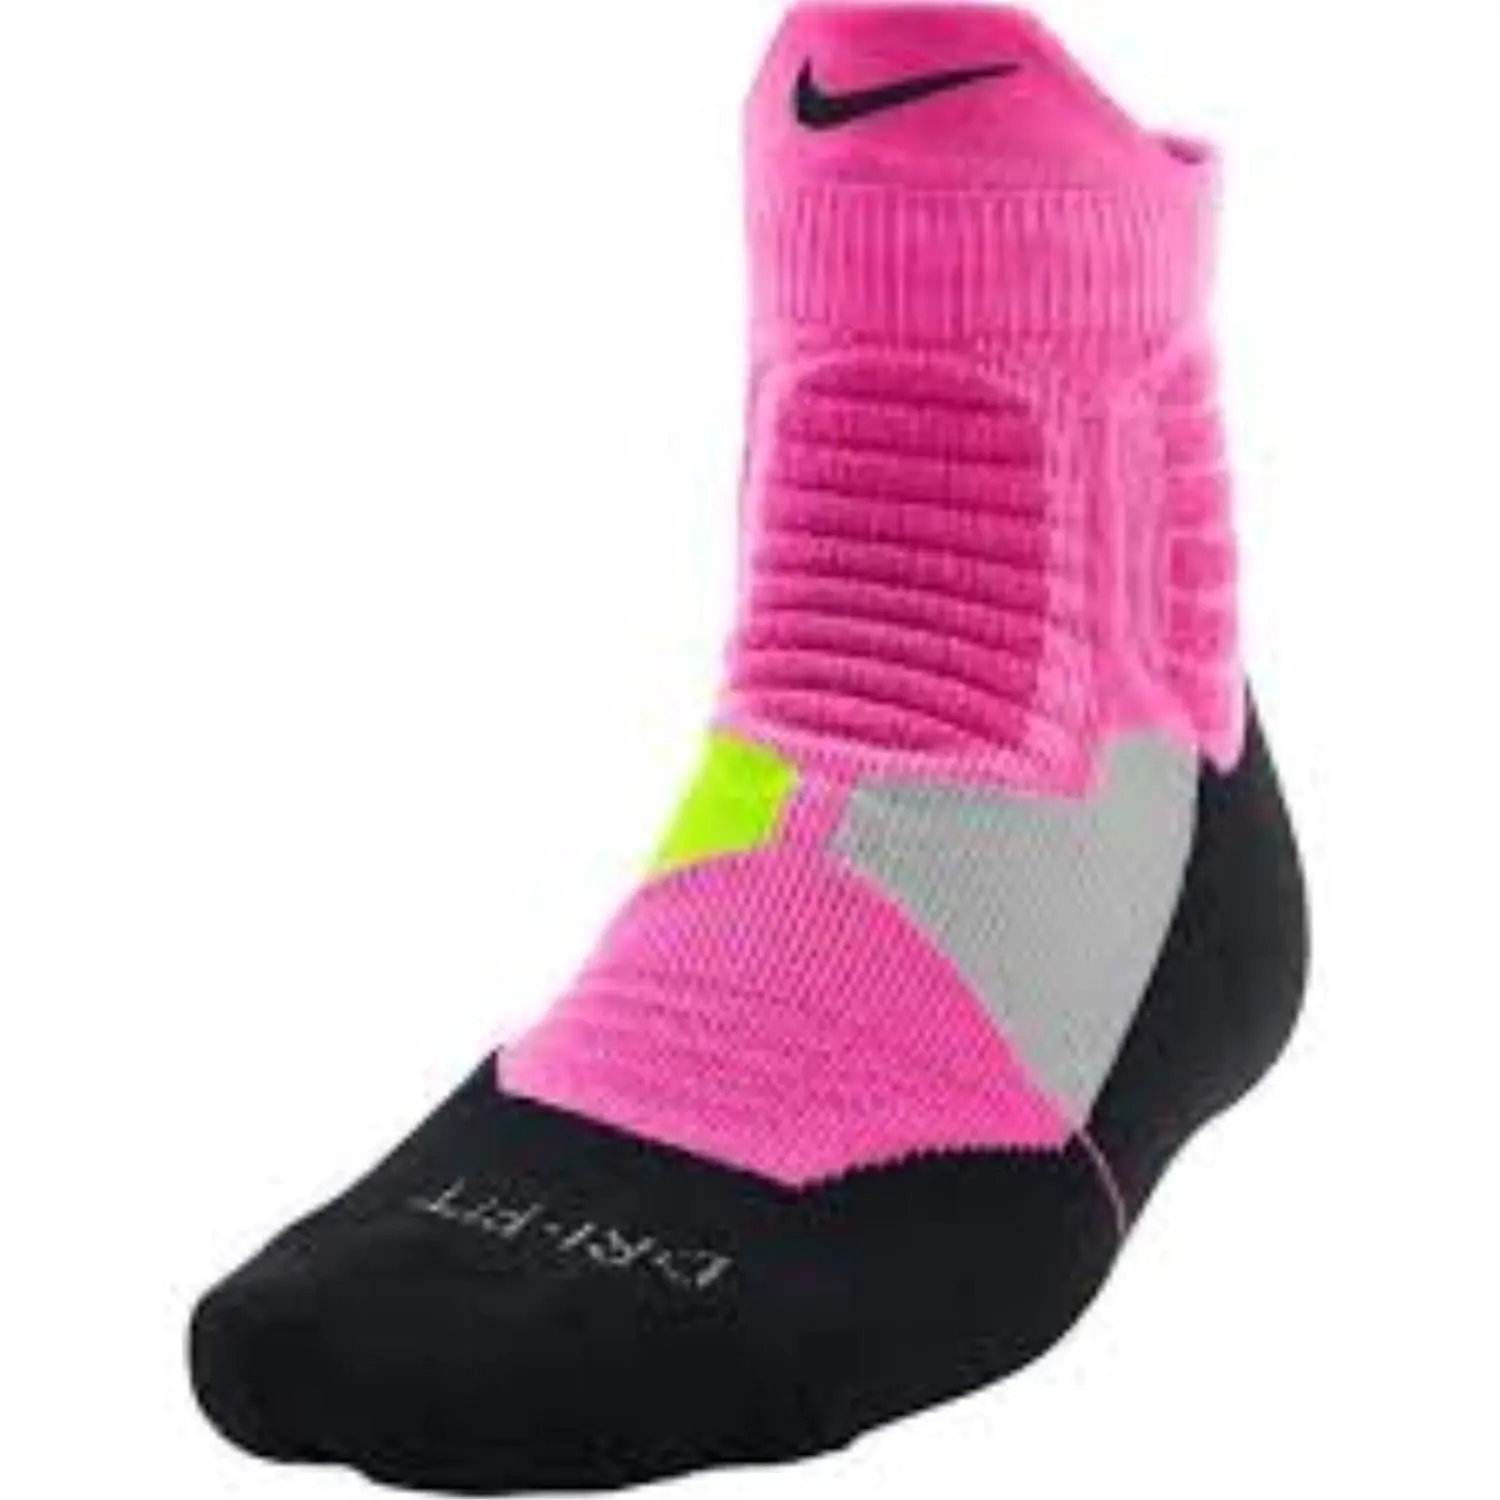 nike hyper elite basketball socks